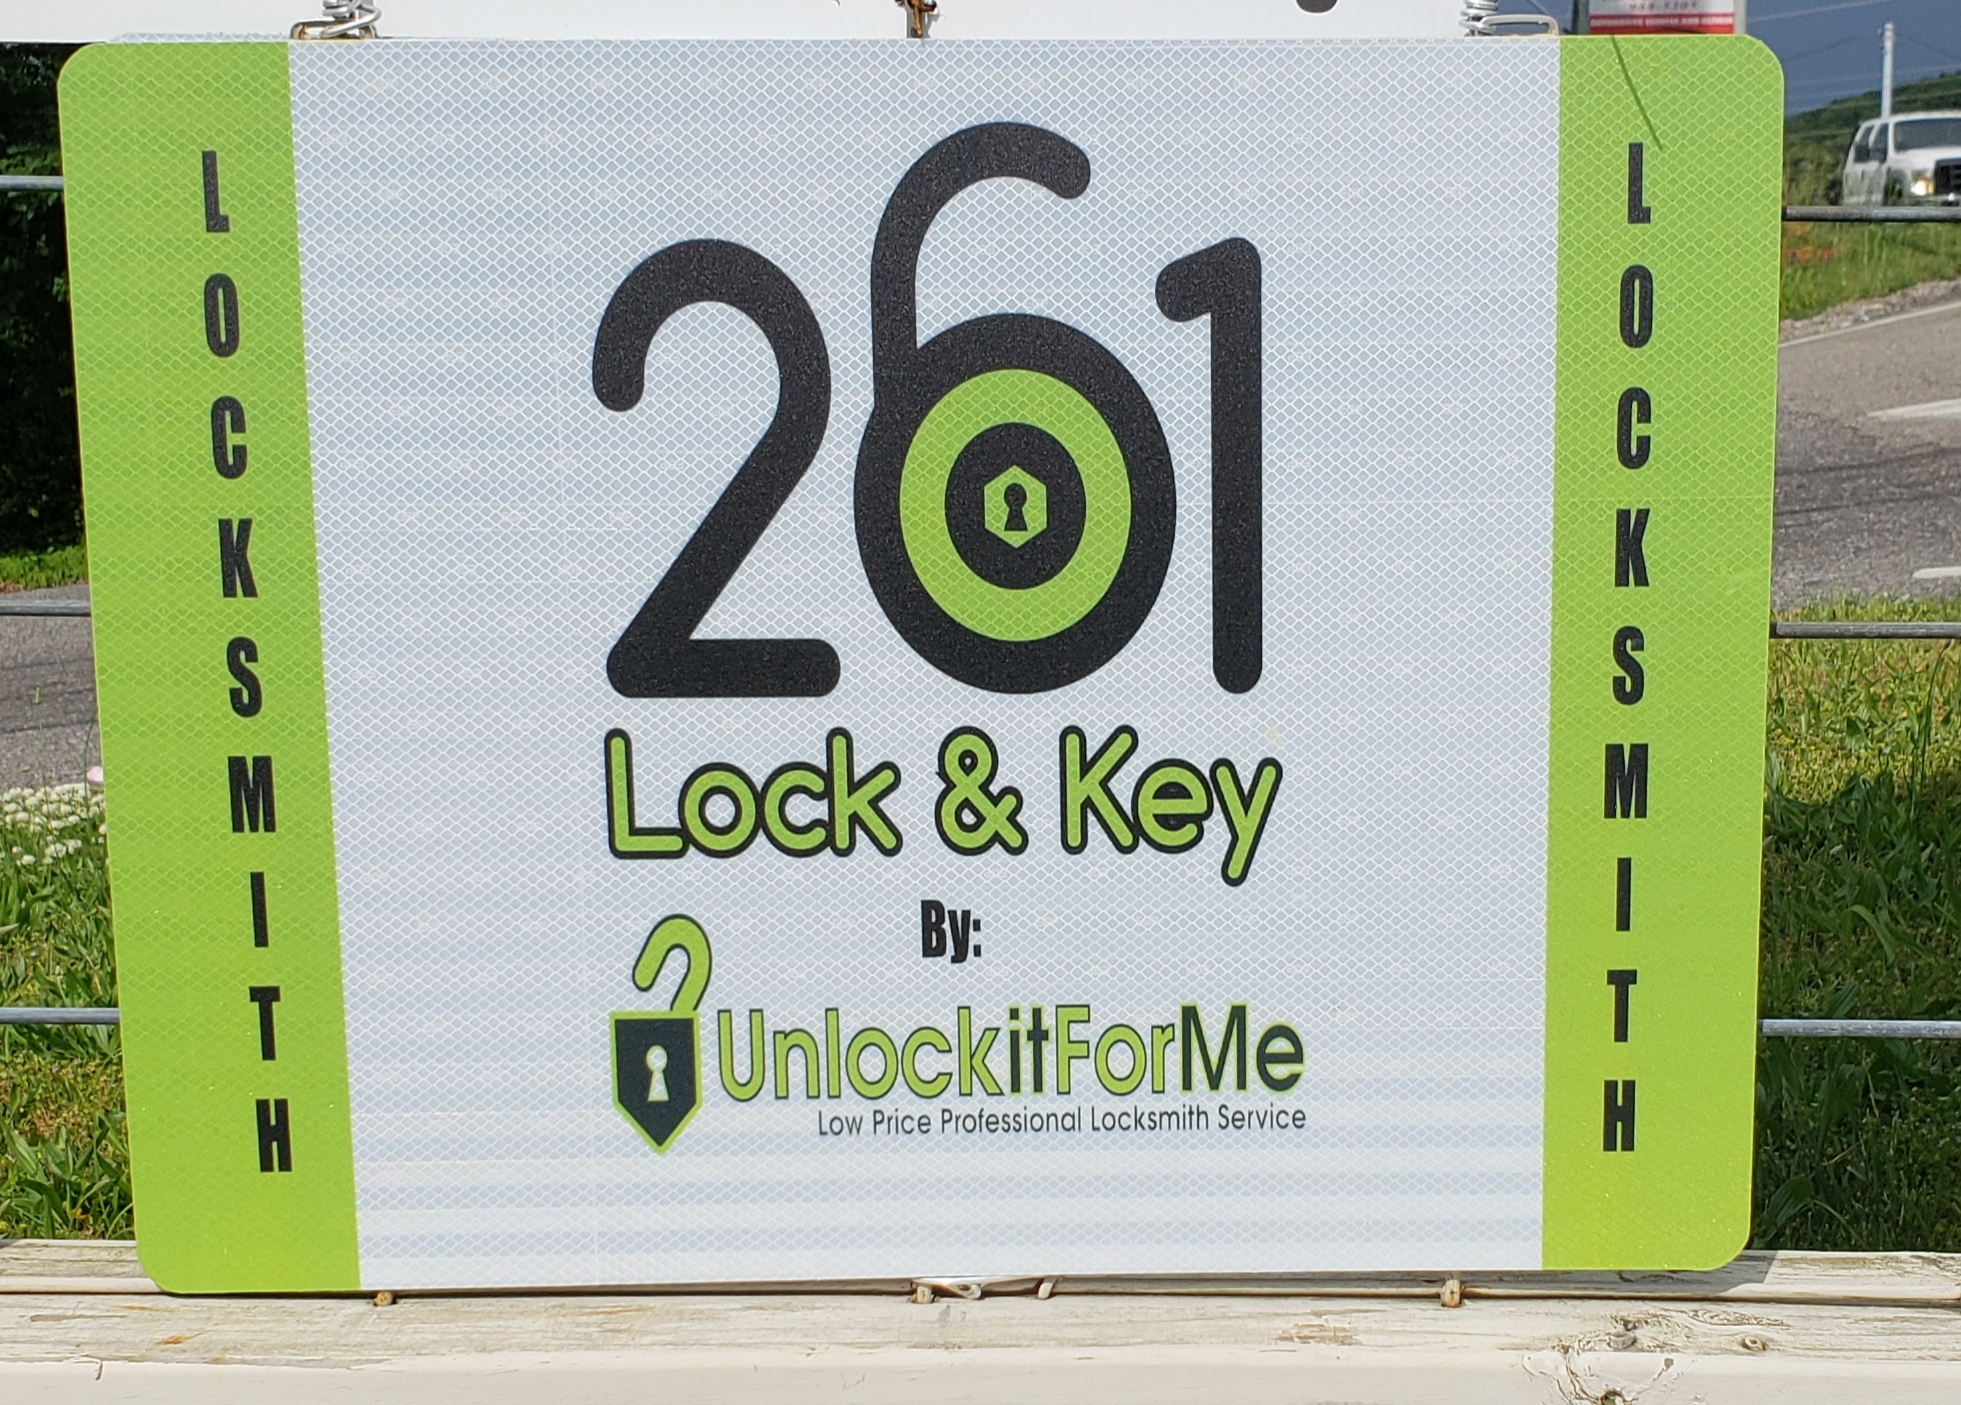 261 Lock & Key